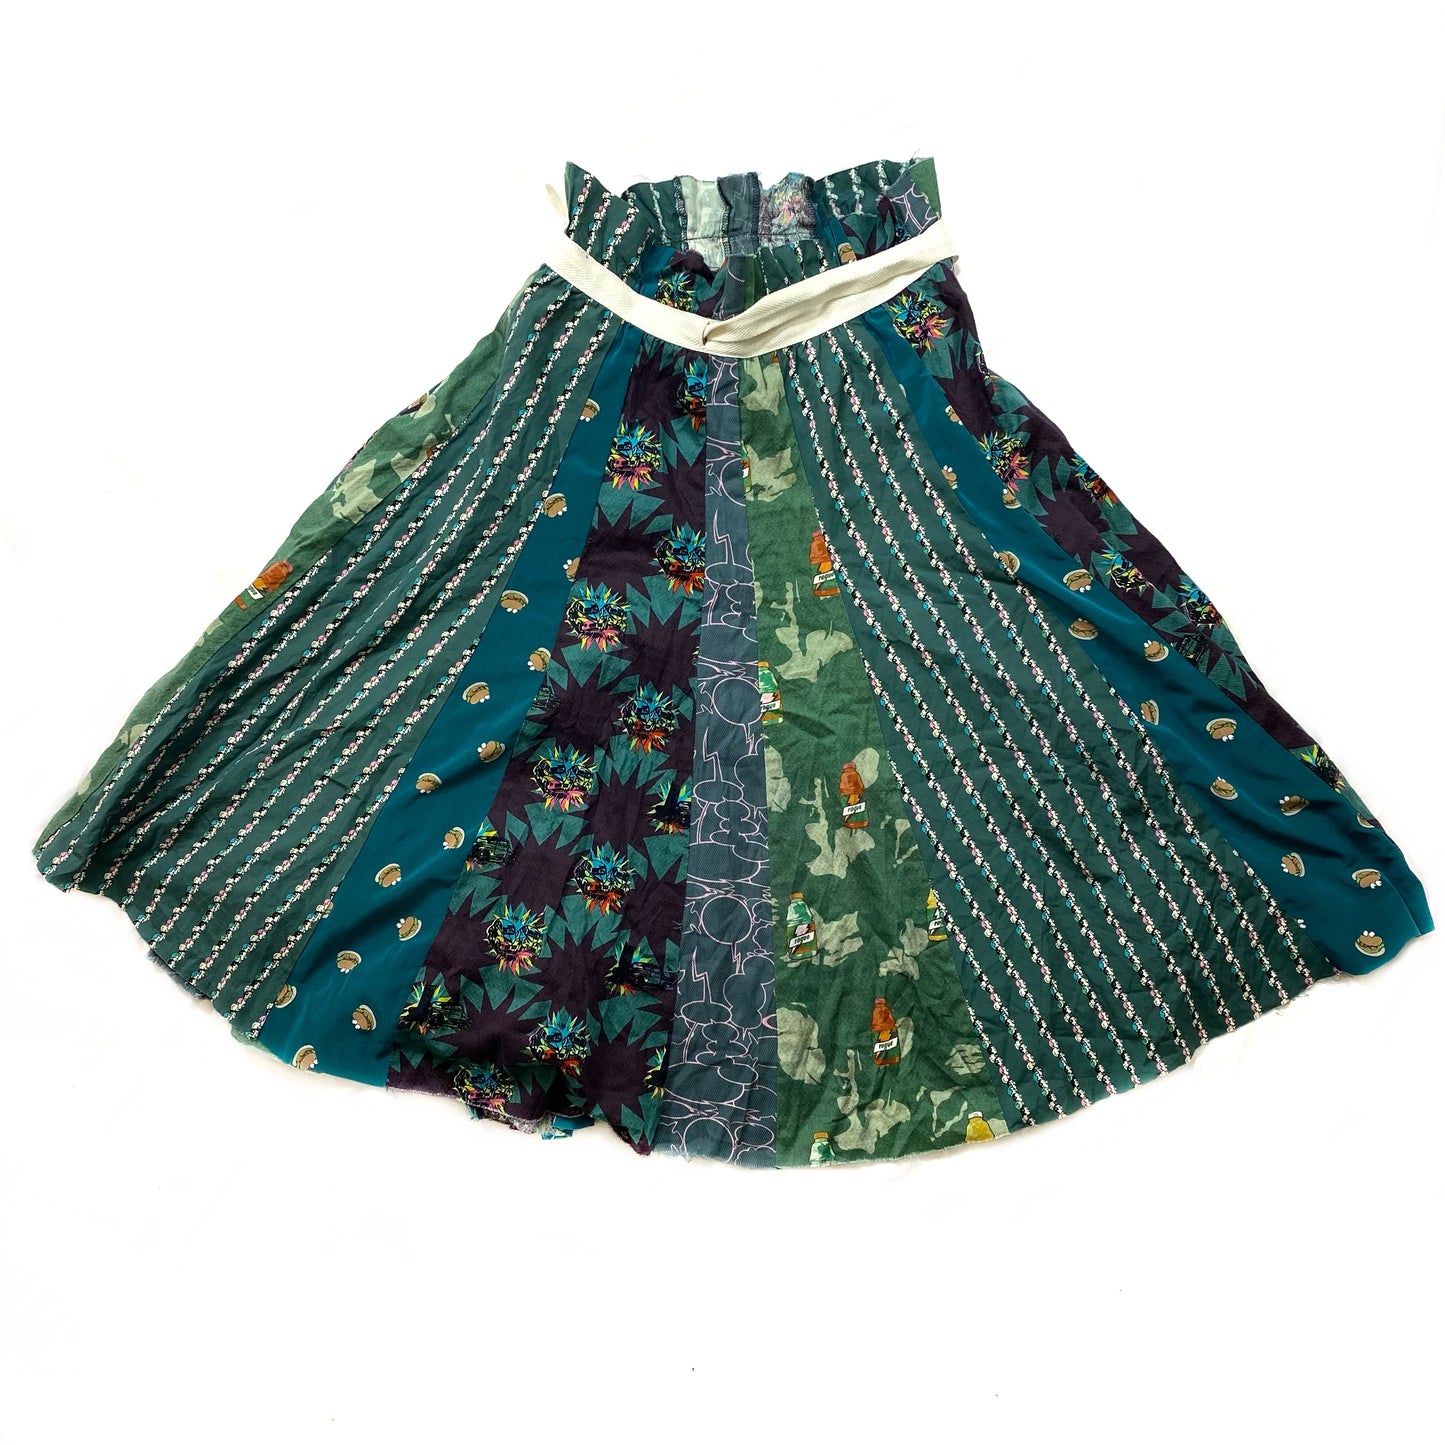 Undercover rebuild skirt A/W01 “D.A.V.F” free size – Coup de Grace